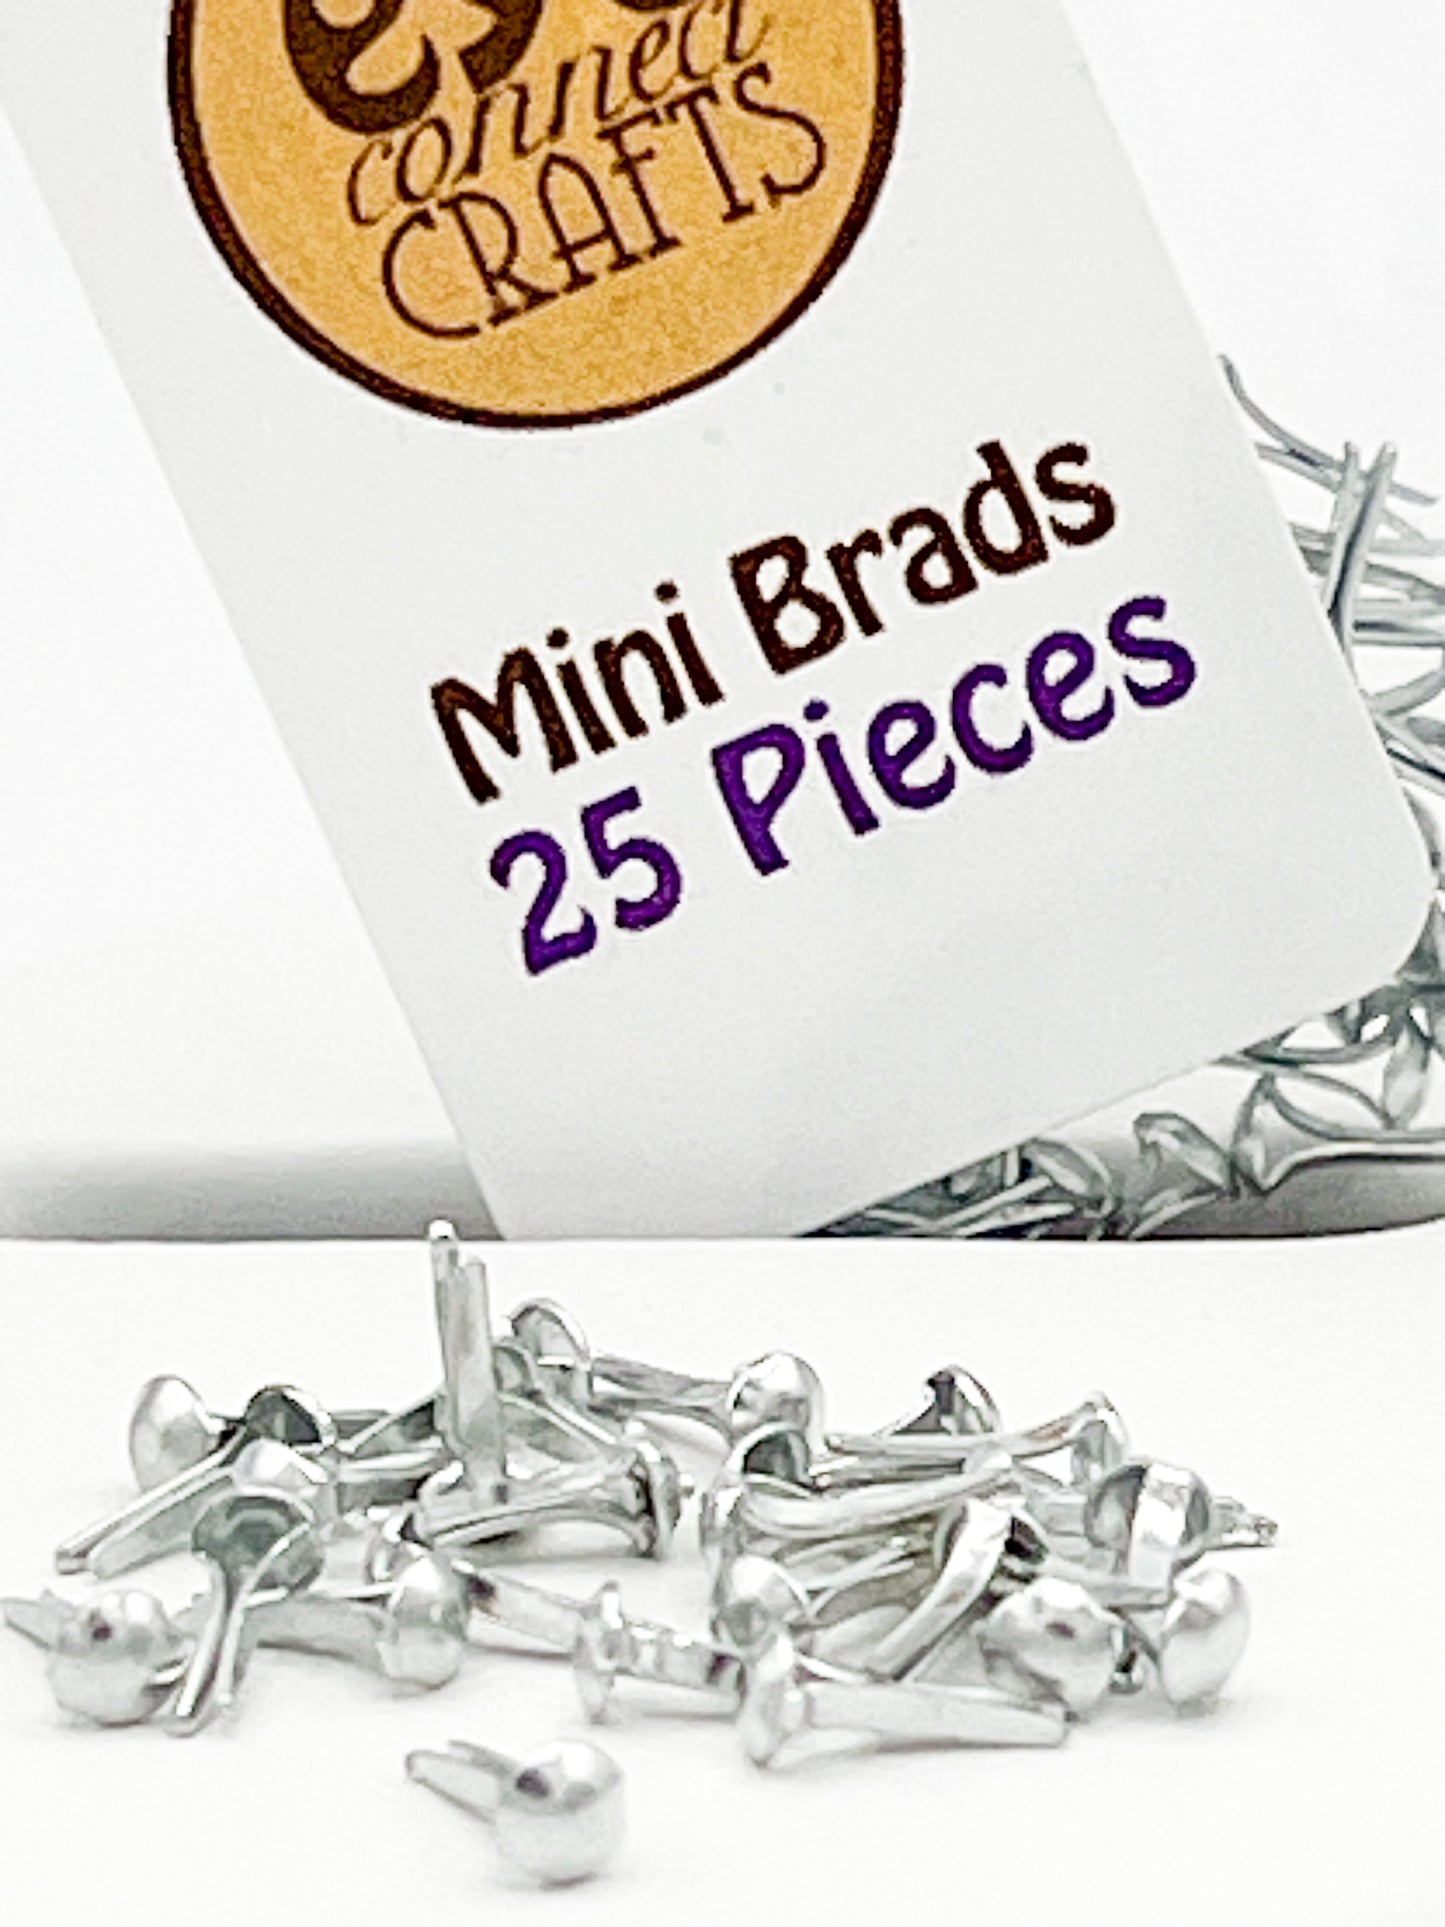 Mini Brads